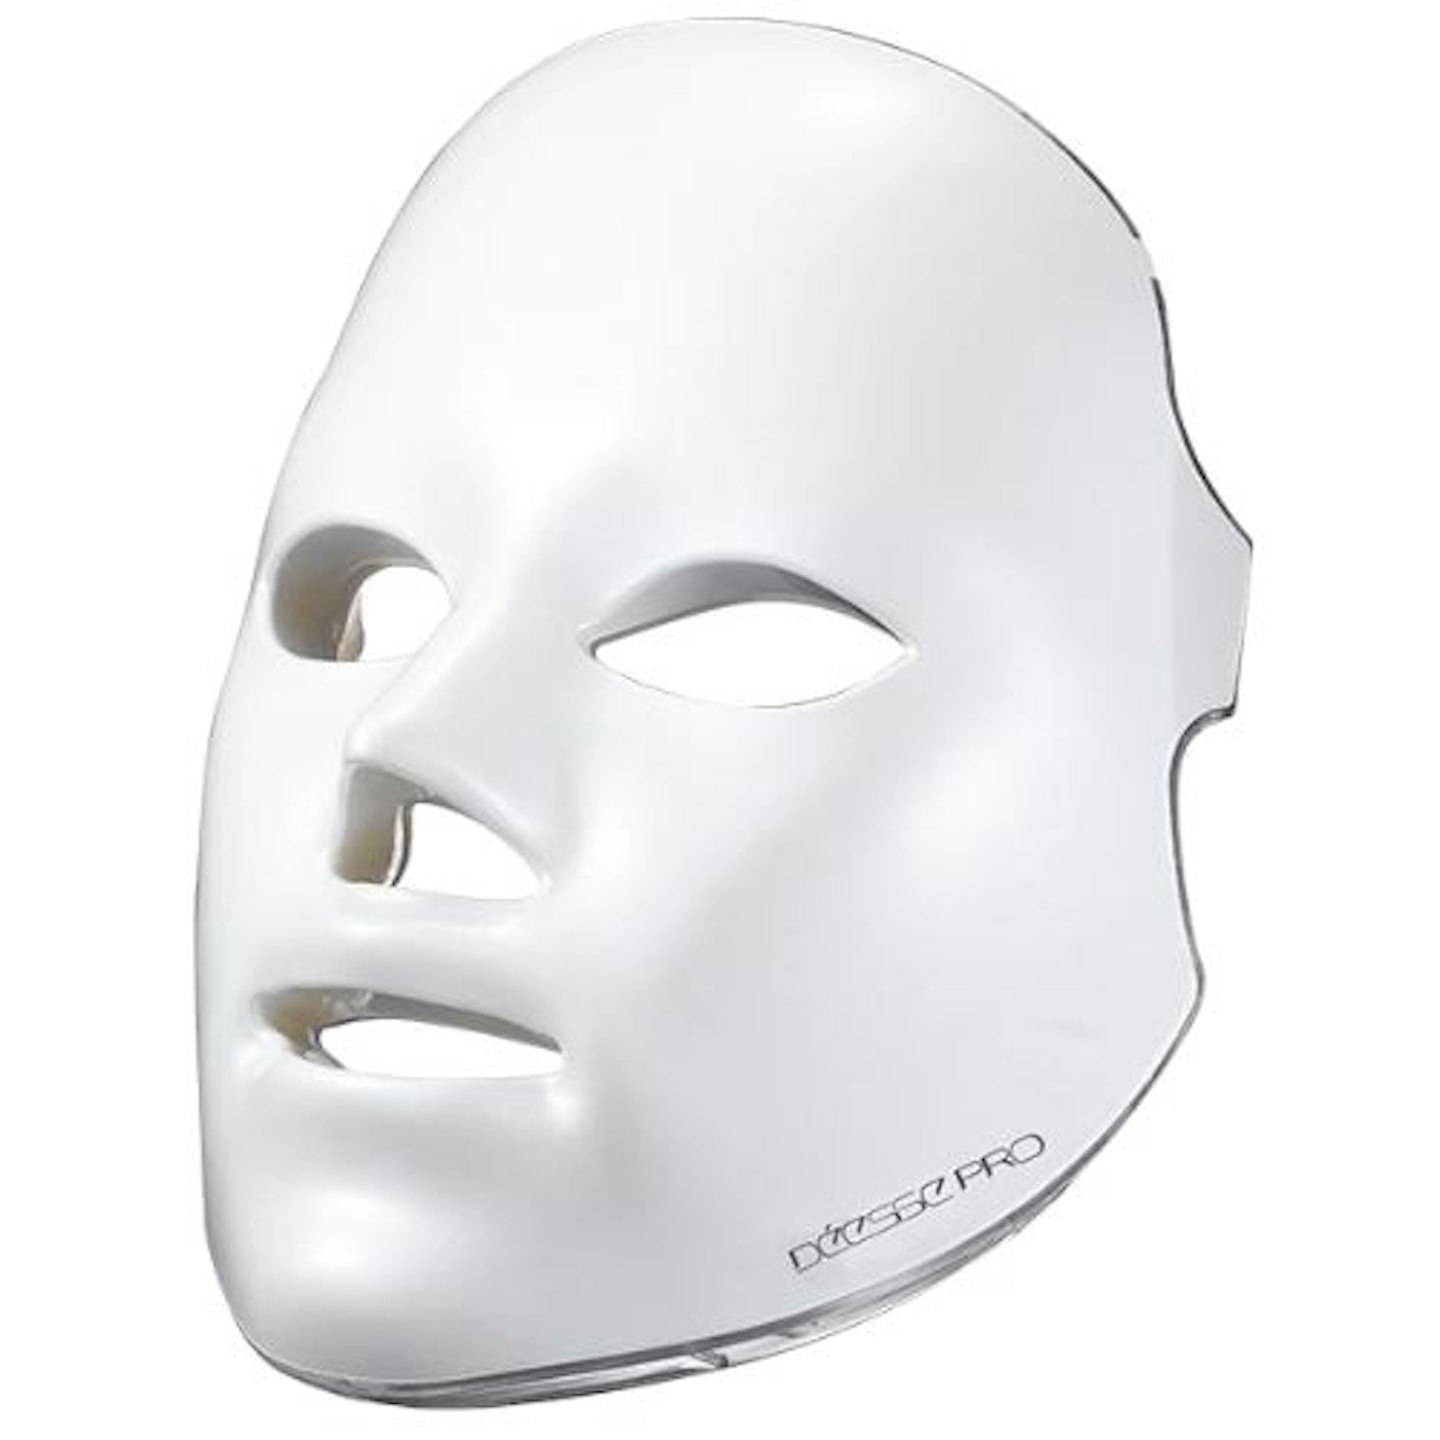 Déesse Pro LED Light Therapy Face Mask